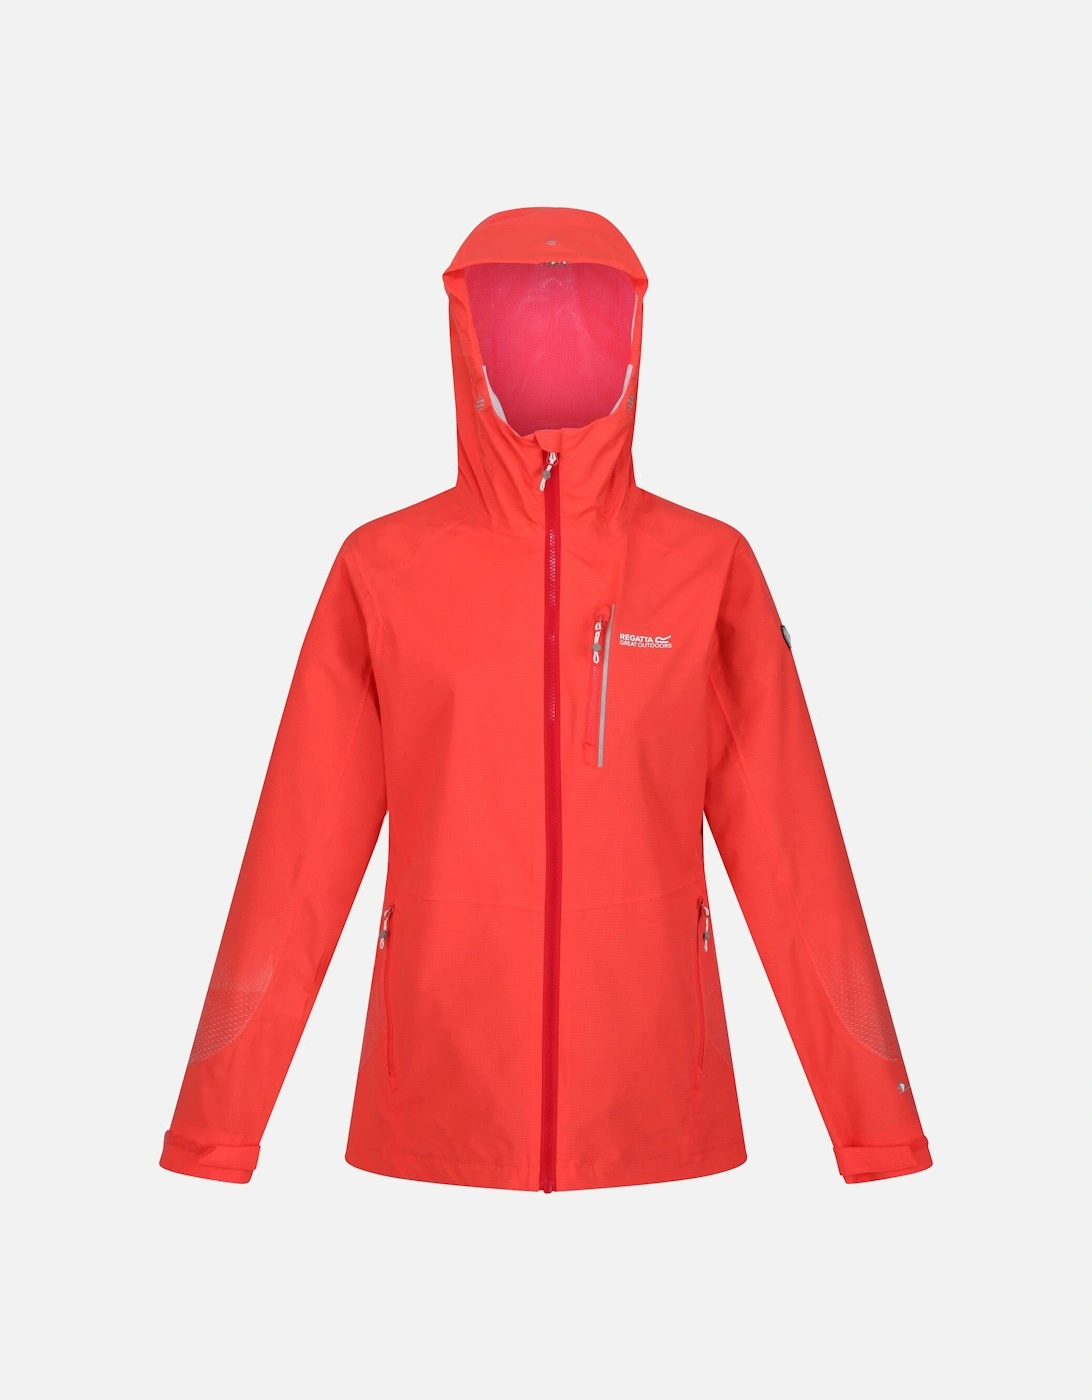 Womens/Ladies Highton Pro Waterproof Jacket, 6 of 5